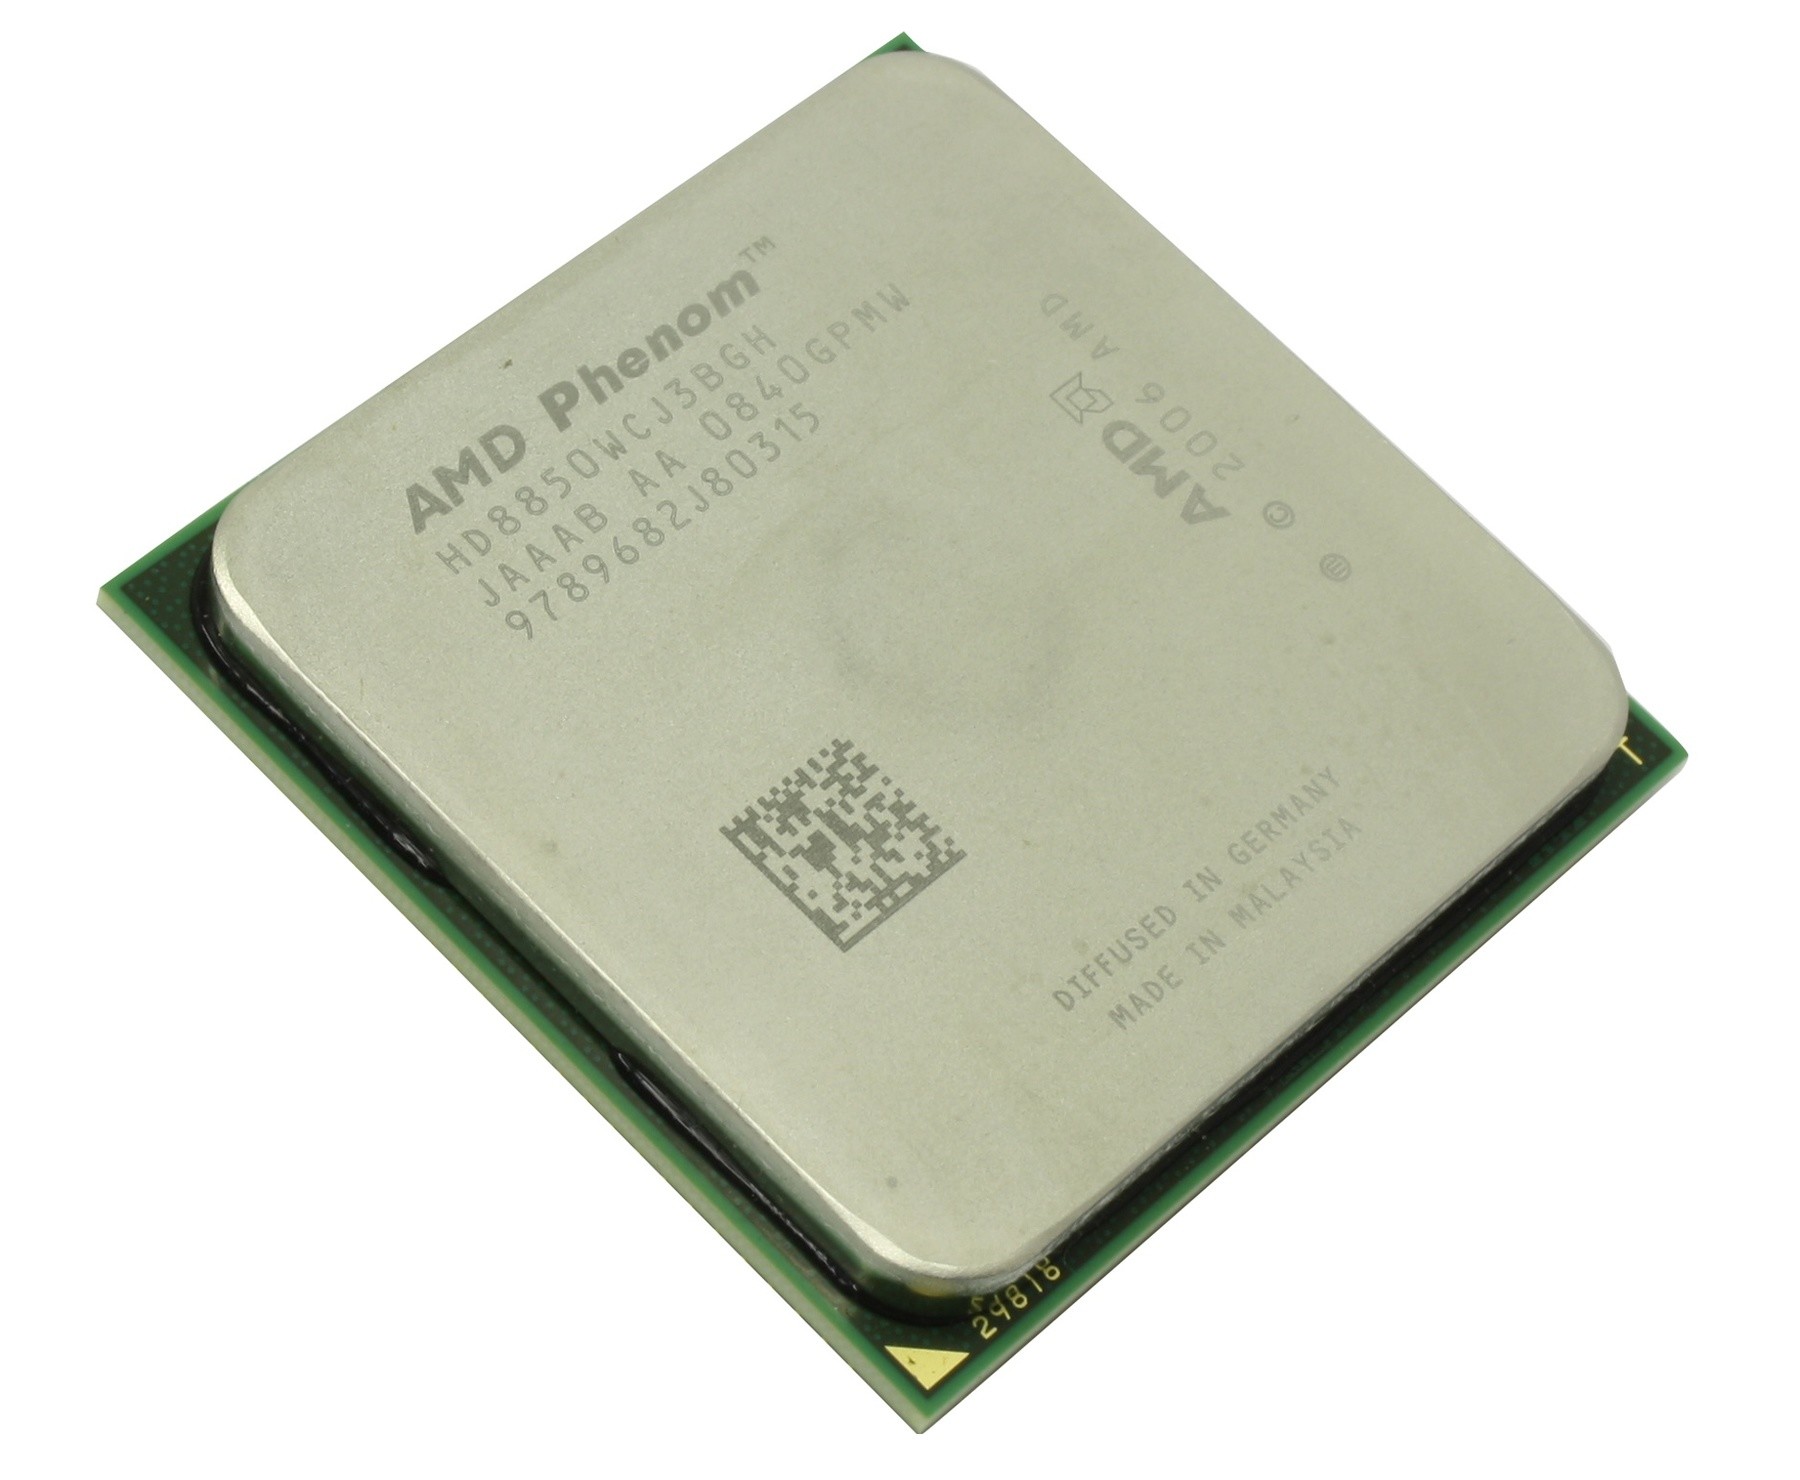 Phenom x6 1075t. AMD Phenom™II x6. AMD Phenom TM II x2 511 Processor 3.40 GHZ. AMD Phenom x3 8650 Toliman am2+, 3 x 2300 МГЦ. Processor: AMD Phenom II x2 565 3.40 GHZ Ram: 2, 00 GB компьютер.